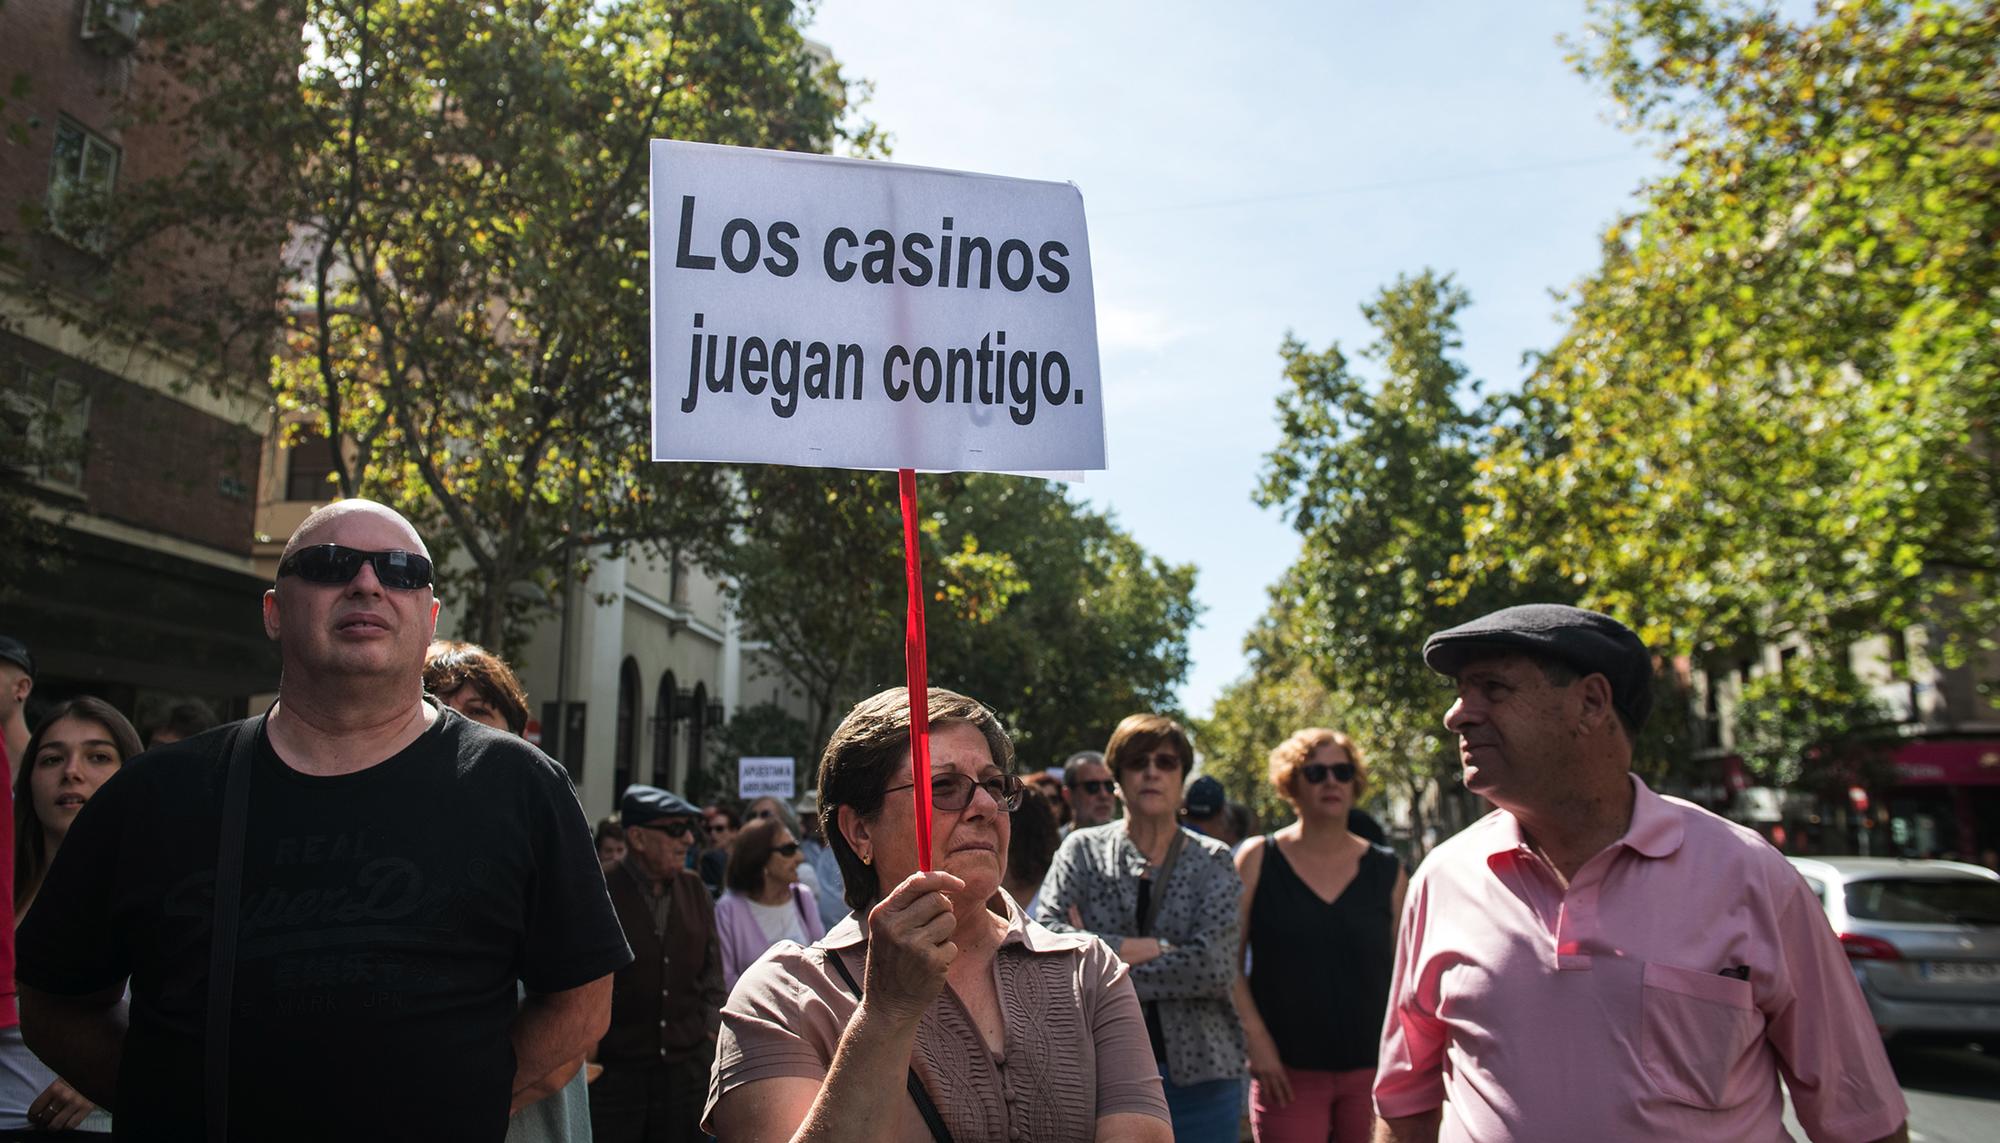 Manifestación contra las casa de apuestas en el barrio de Teután, Madrid. 2